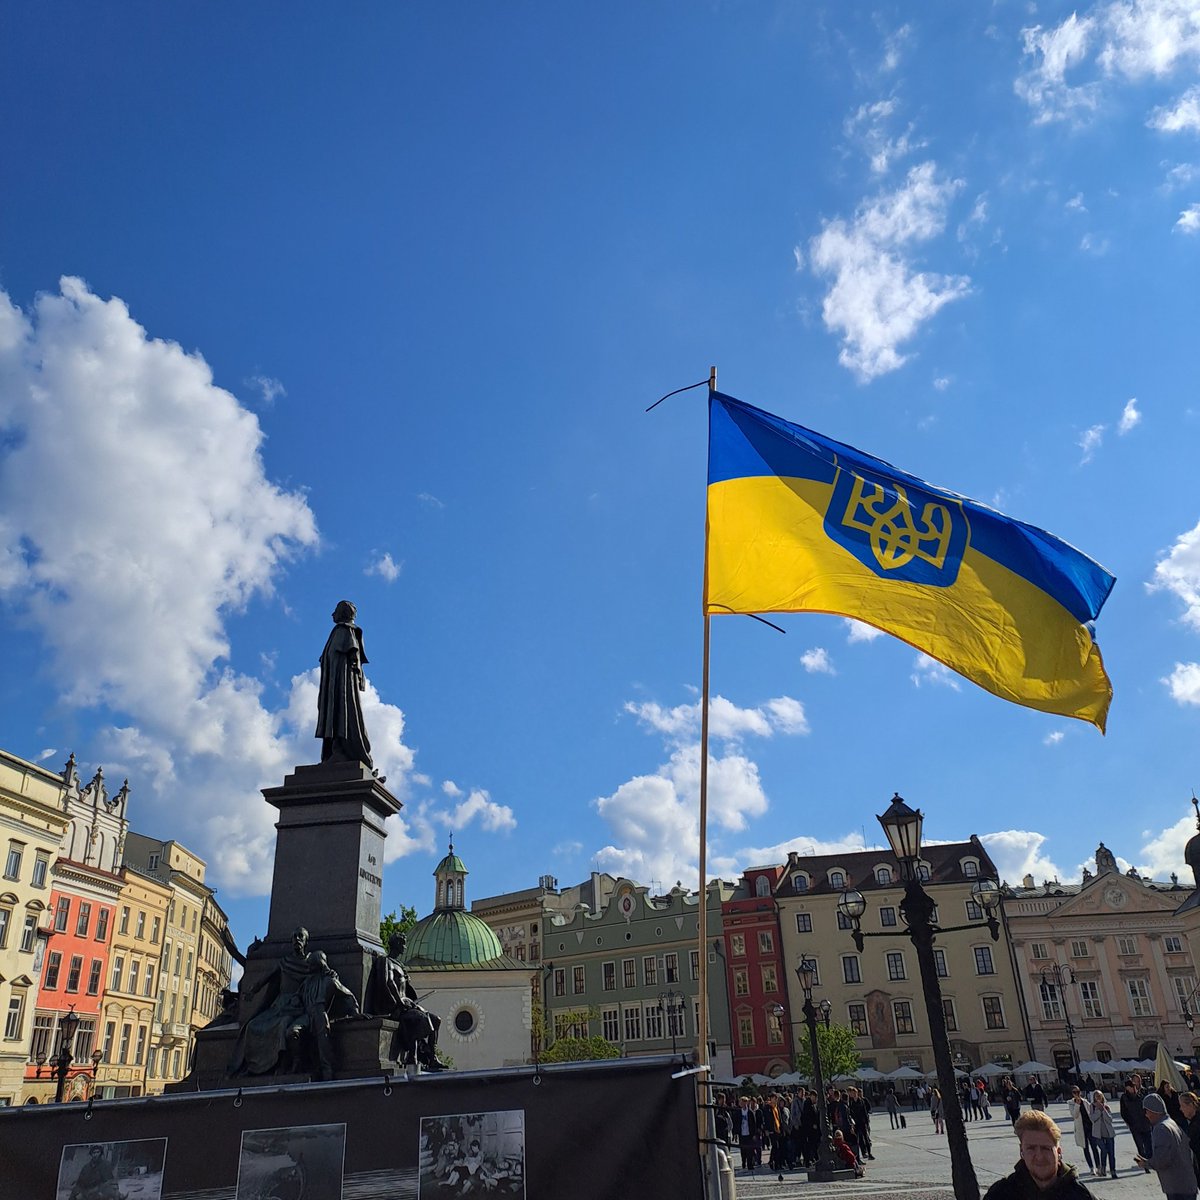 Jeśli ktoś myśli, że to jest jakaś Odessa lub inny obsrany Kharkïv, to dużo się nie myli. Brawo💪
To jest dzisiejszy Krakïv 🇺🇦.
Polskiej, nacjonalistycznej flagi na całym Rynku brak, oczywiście 💪